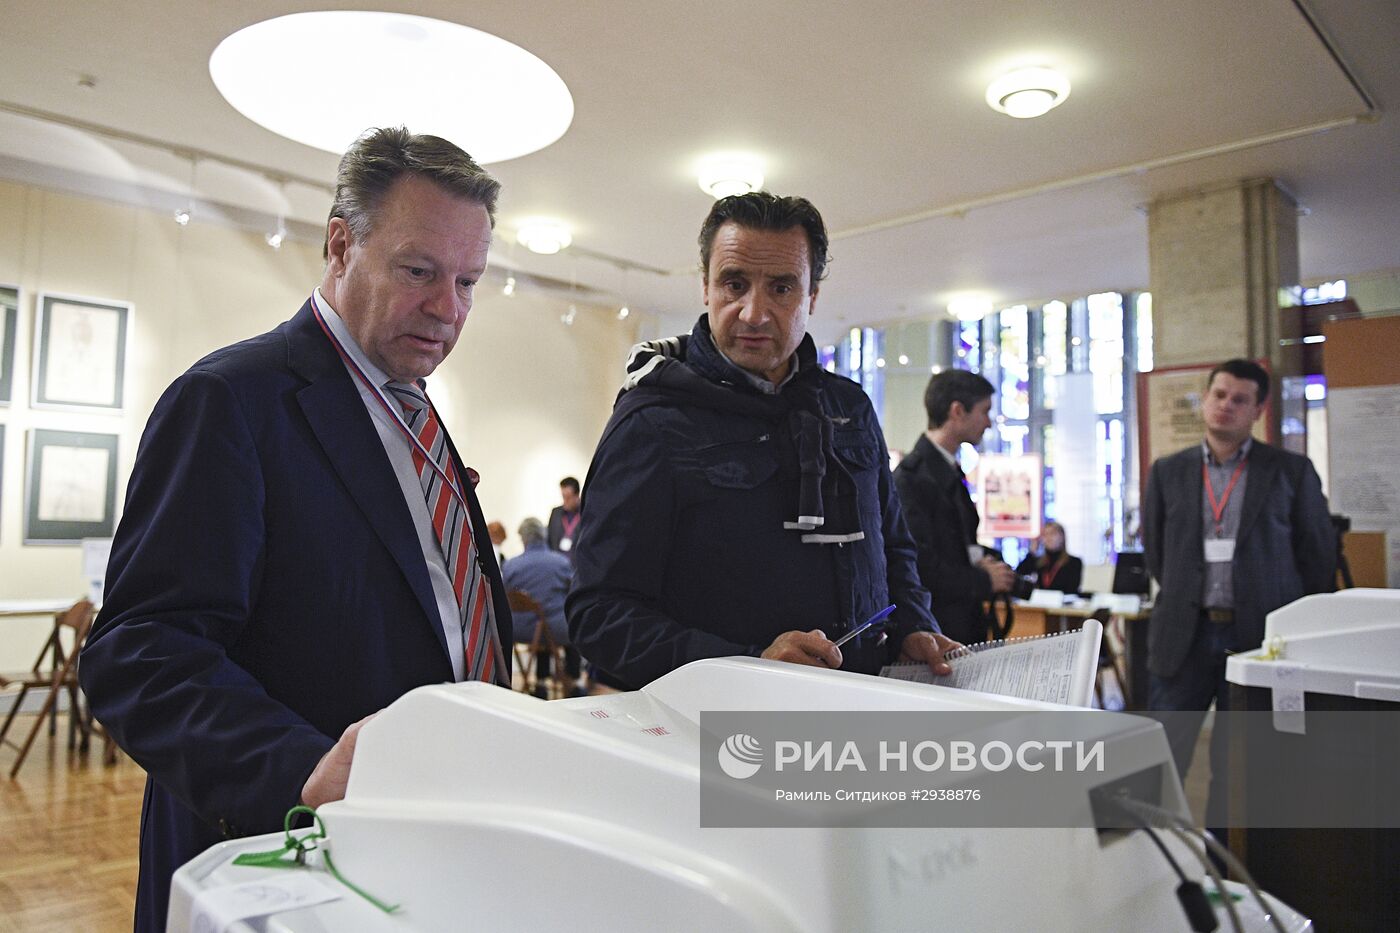 Наблюдатели ОБСЕ посетили избирательный участок в Москве